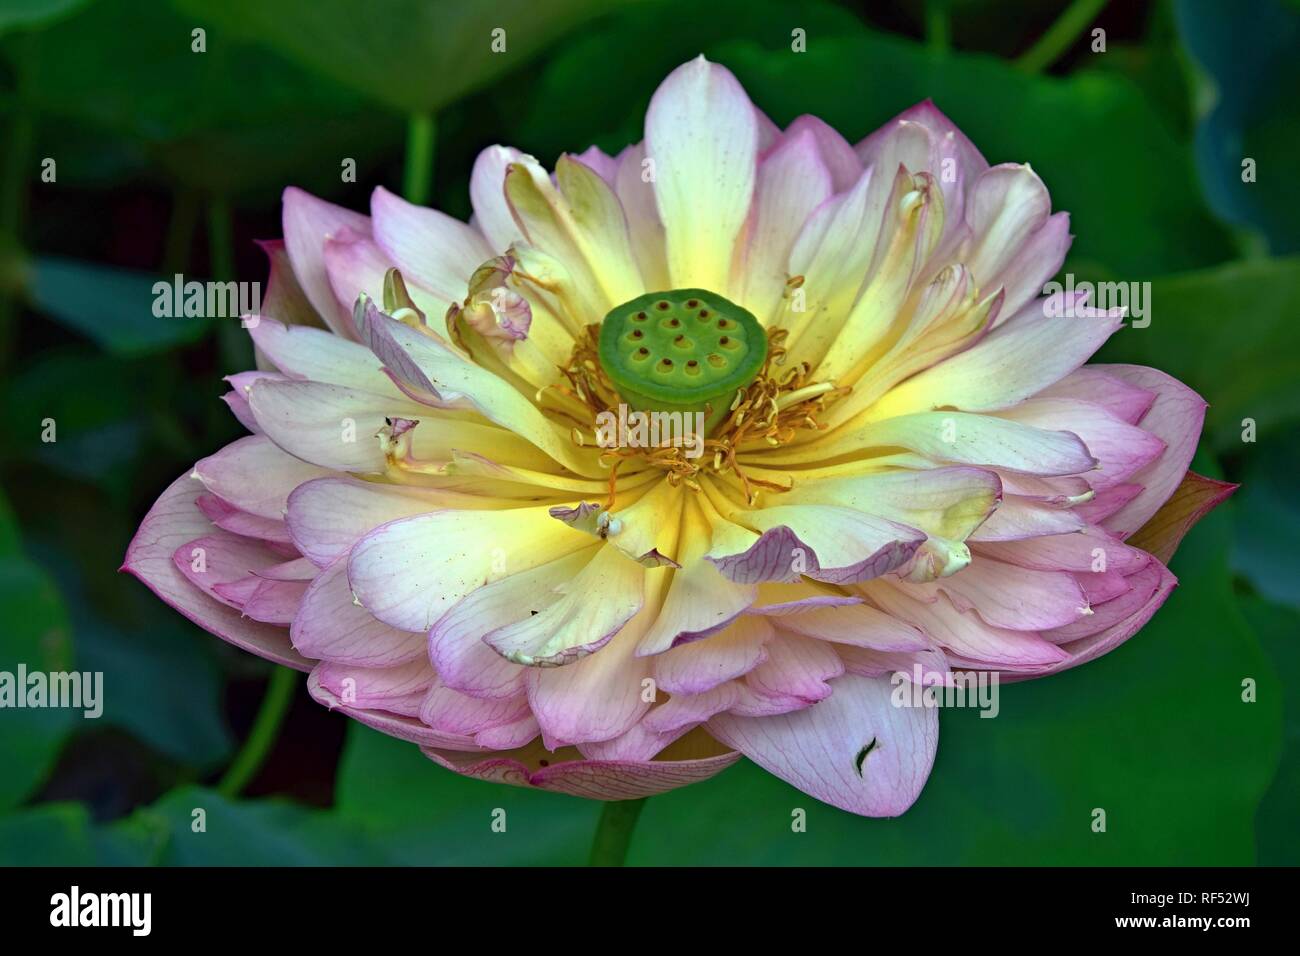 Flor de Loto - símbolo de la divina belleza y pureza. Foto de stock